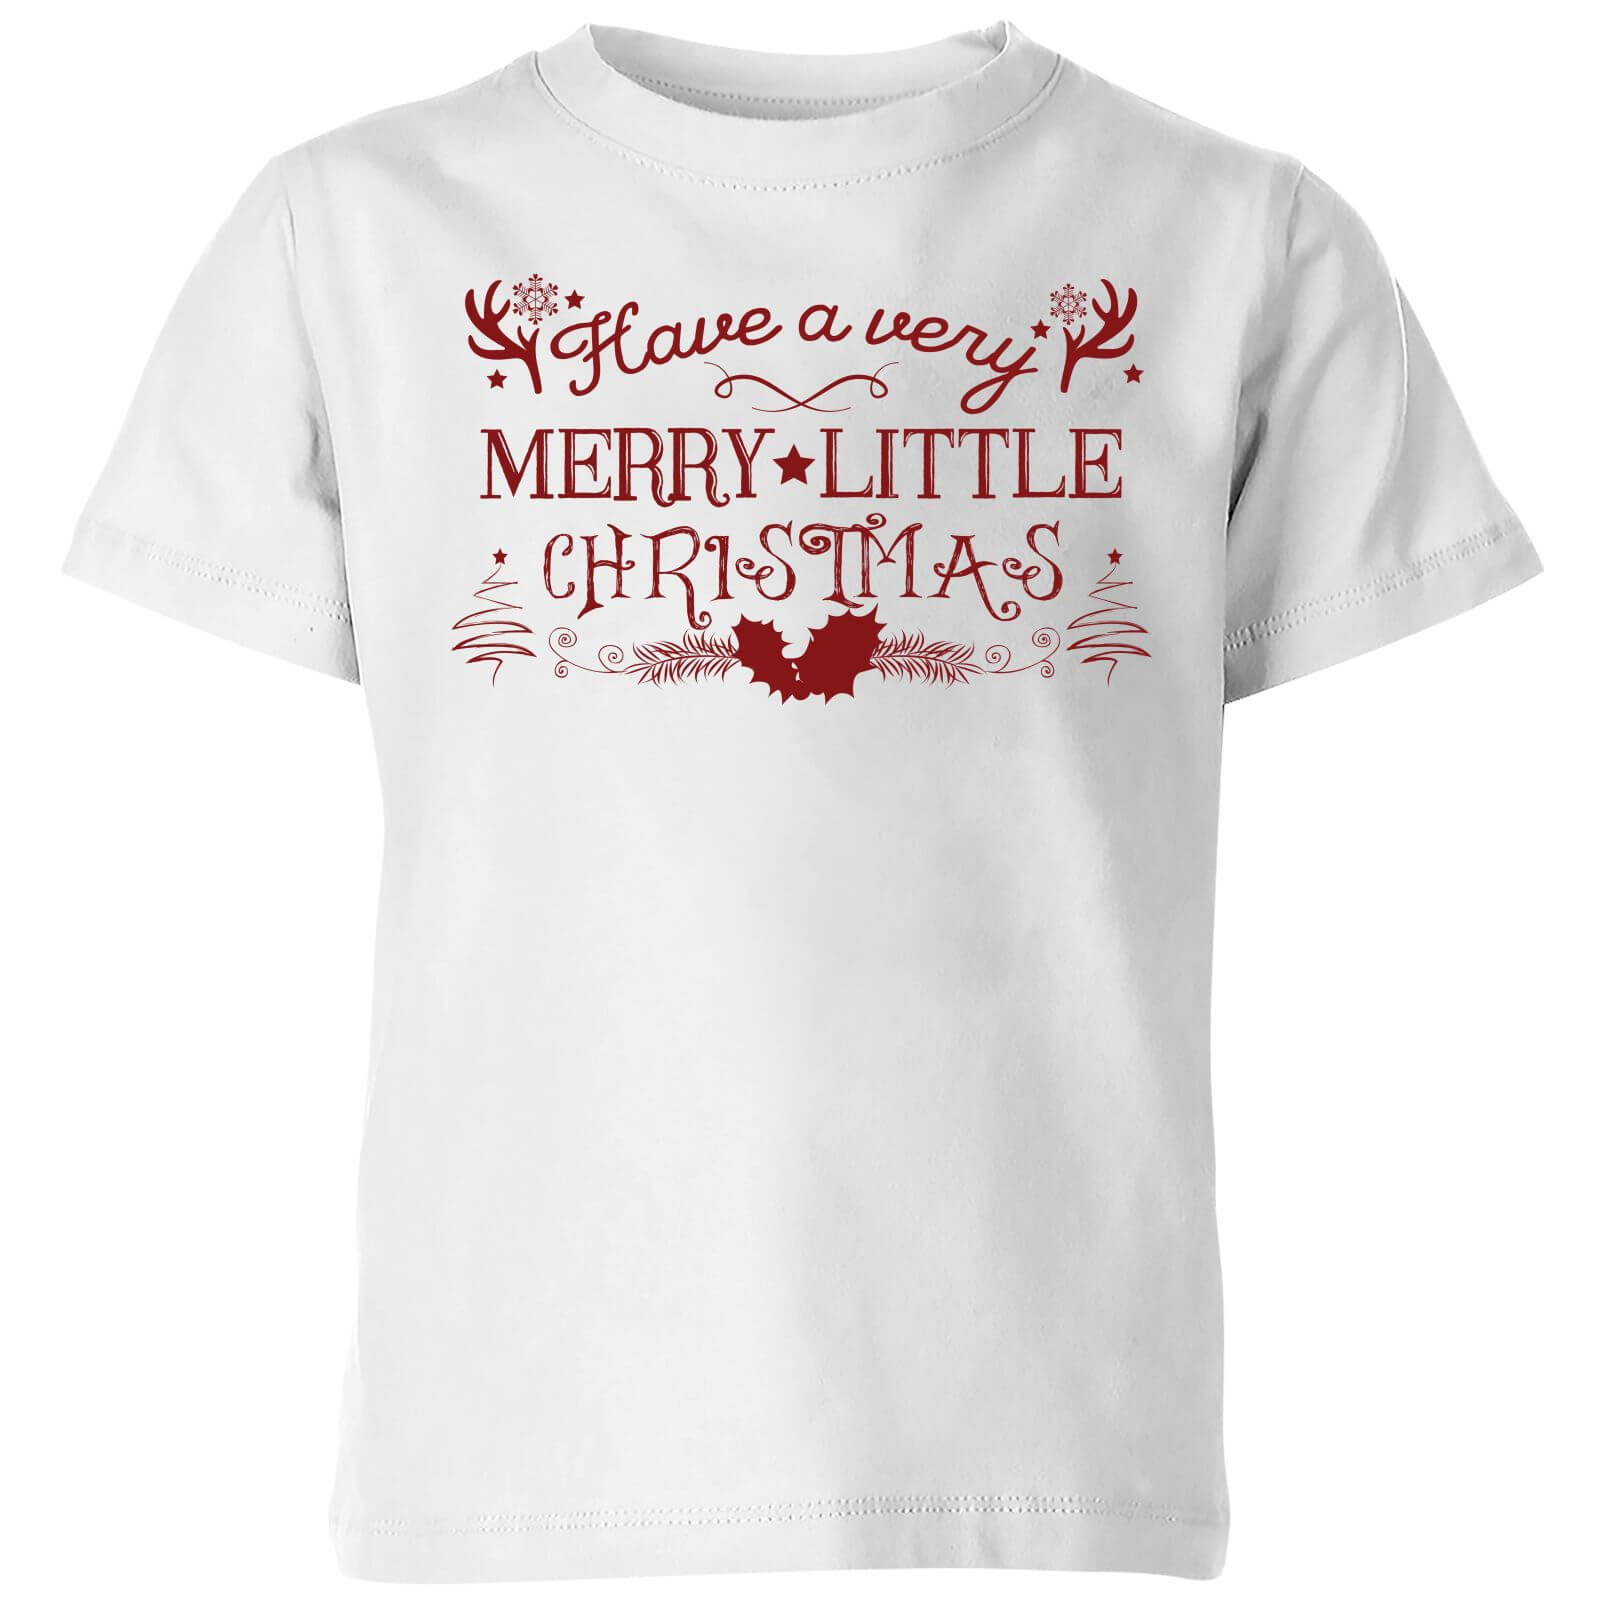 Very Merry Kids' T-Shirt - White - 3-4 Years - White